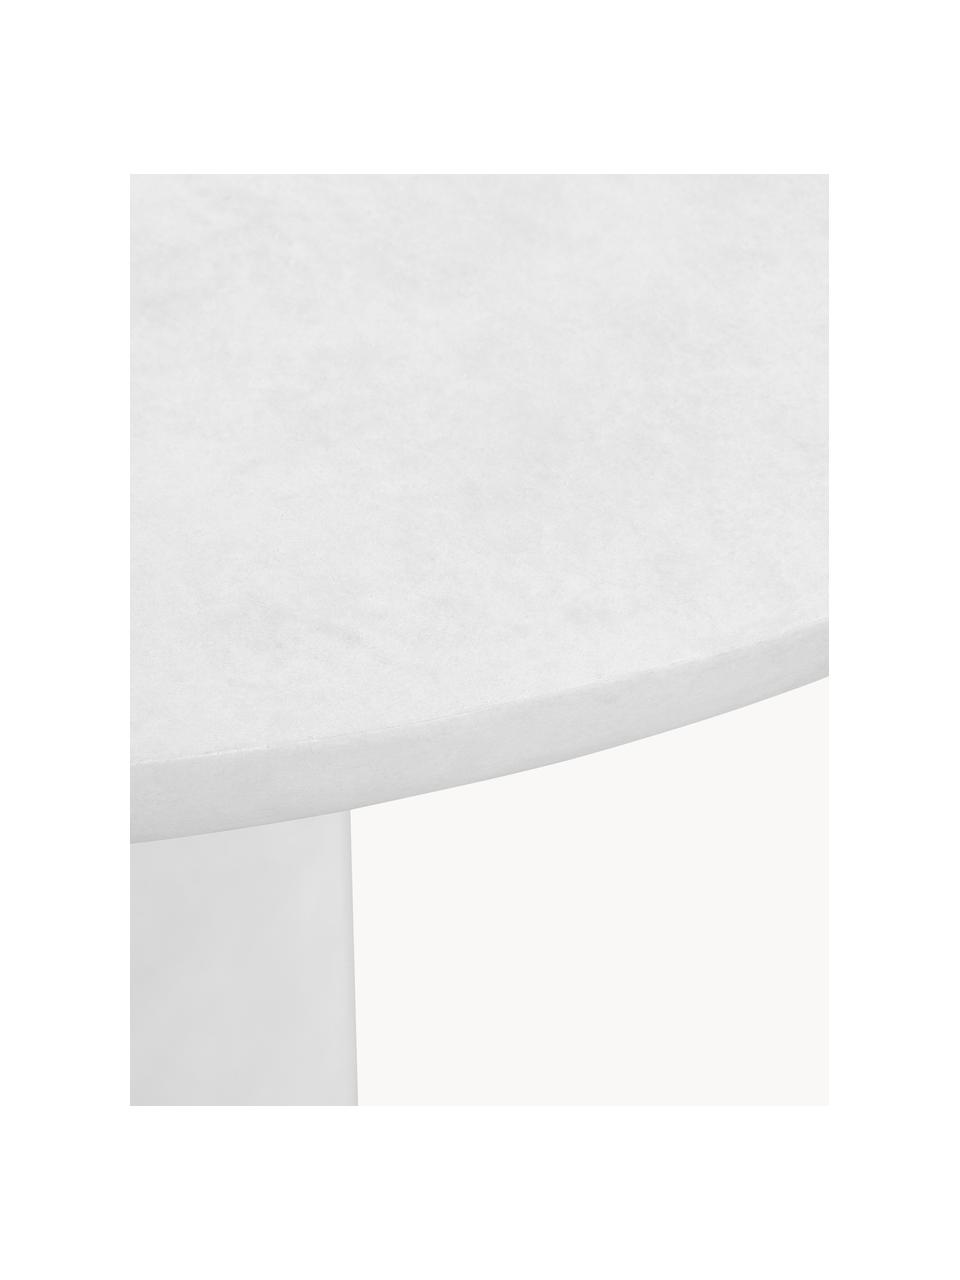 Tavolo rotondo da giardino in cemento Damon, Ø 100 cm, Argilla rivestita, Bianco latte, effetto cemento, Ø 100 x Alt. 76 cm